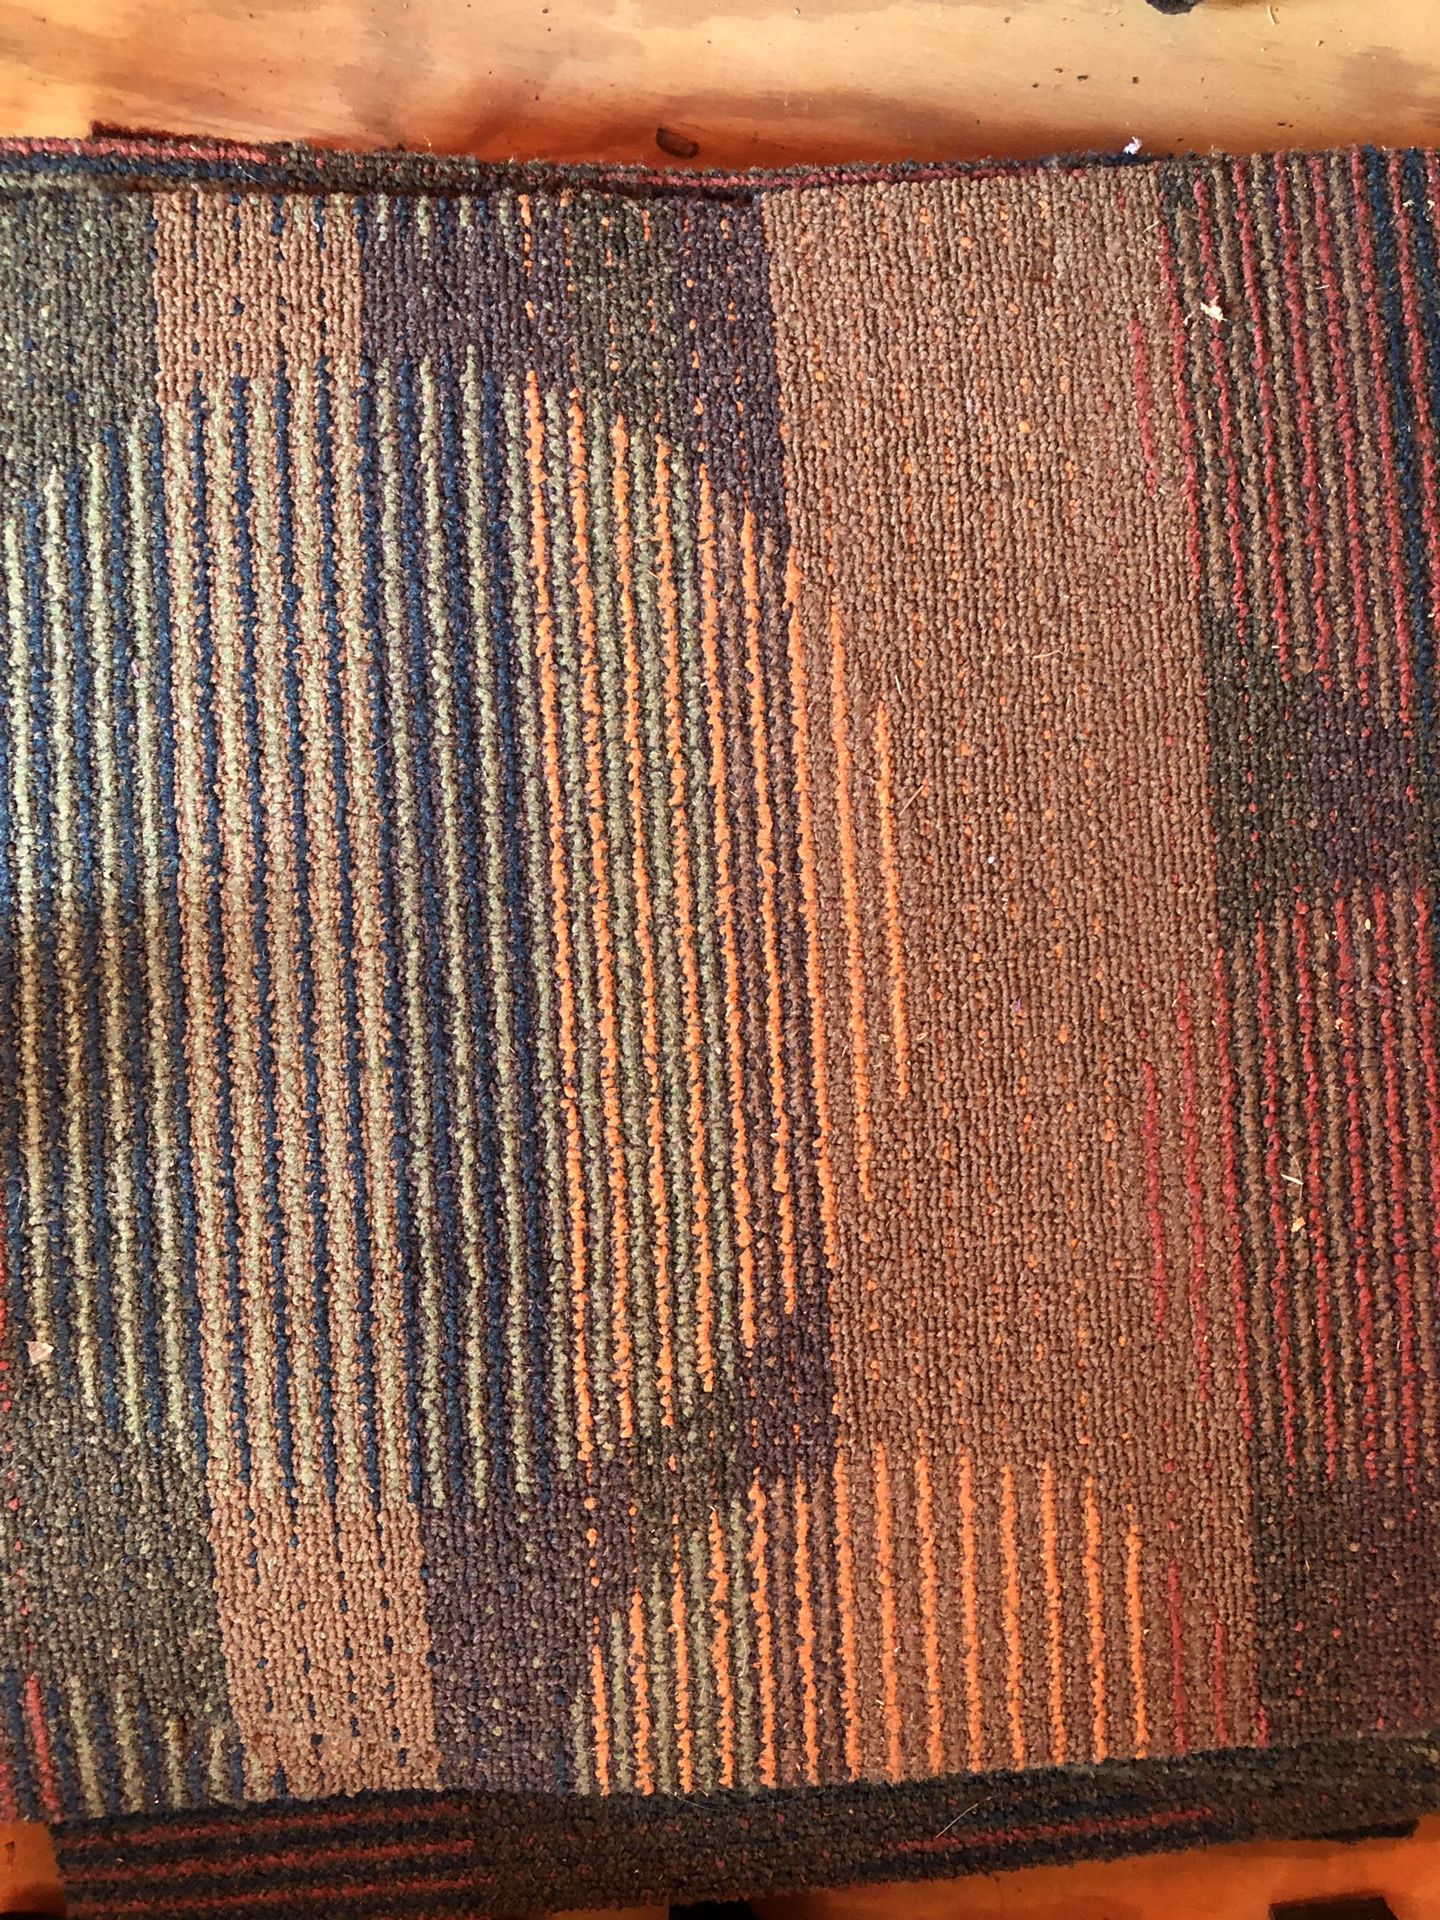 1x1 carpet squares